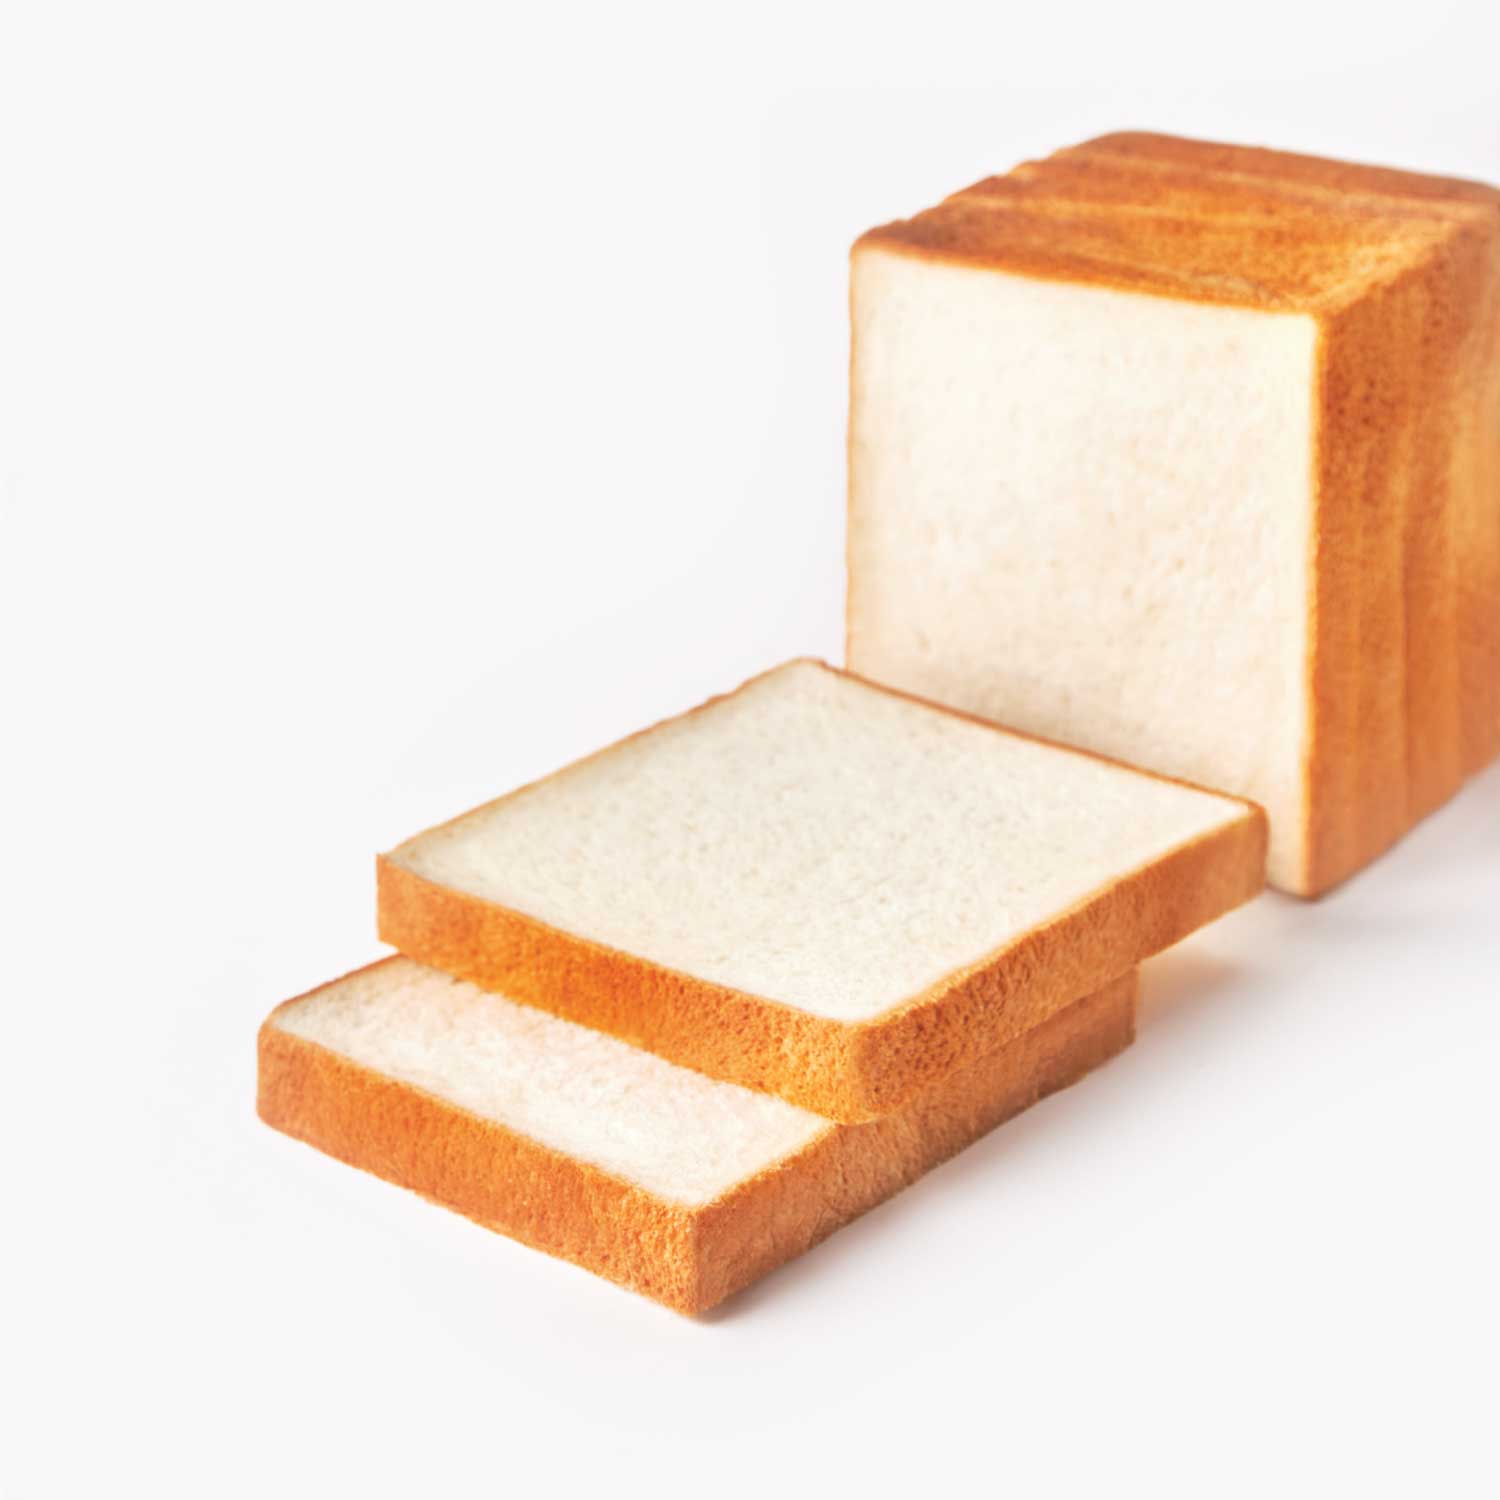 ขนมปังแช่แข็ง : SYNOVA ขนมปังแซนวิชเนื้อขาว ขนาดกลาง สไลด์-1.5 ซม. (ยกกล่อง)